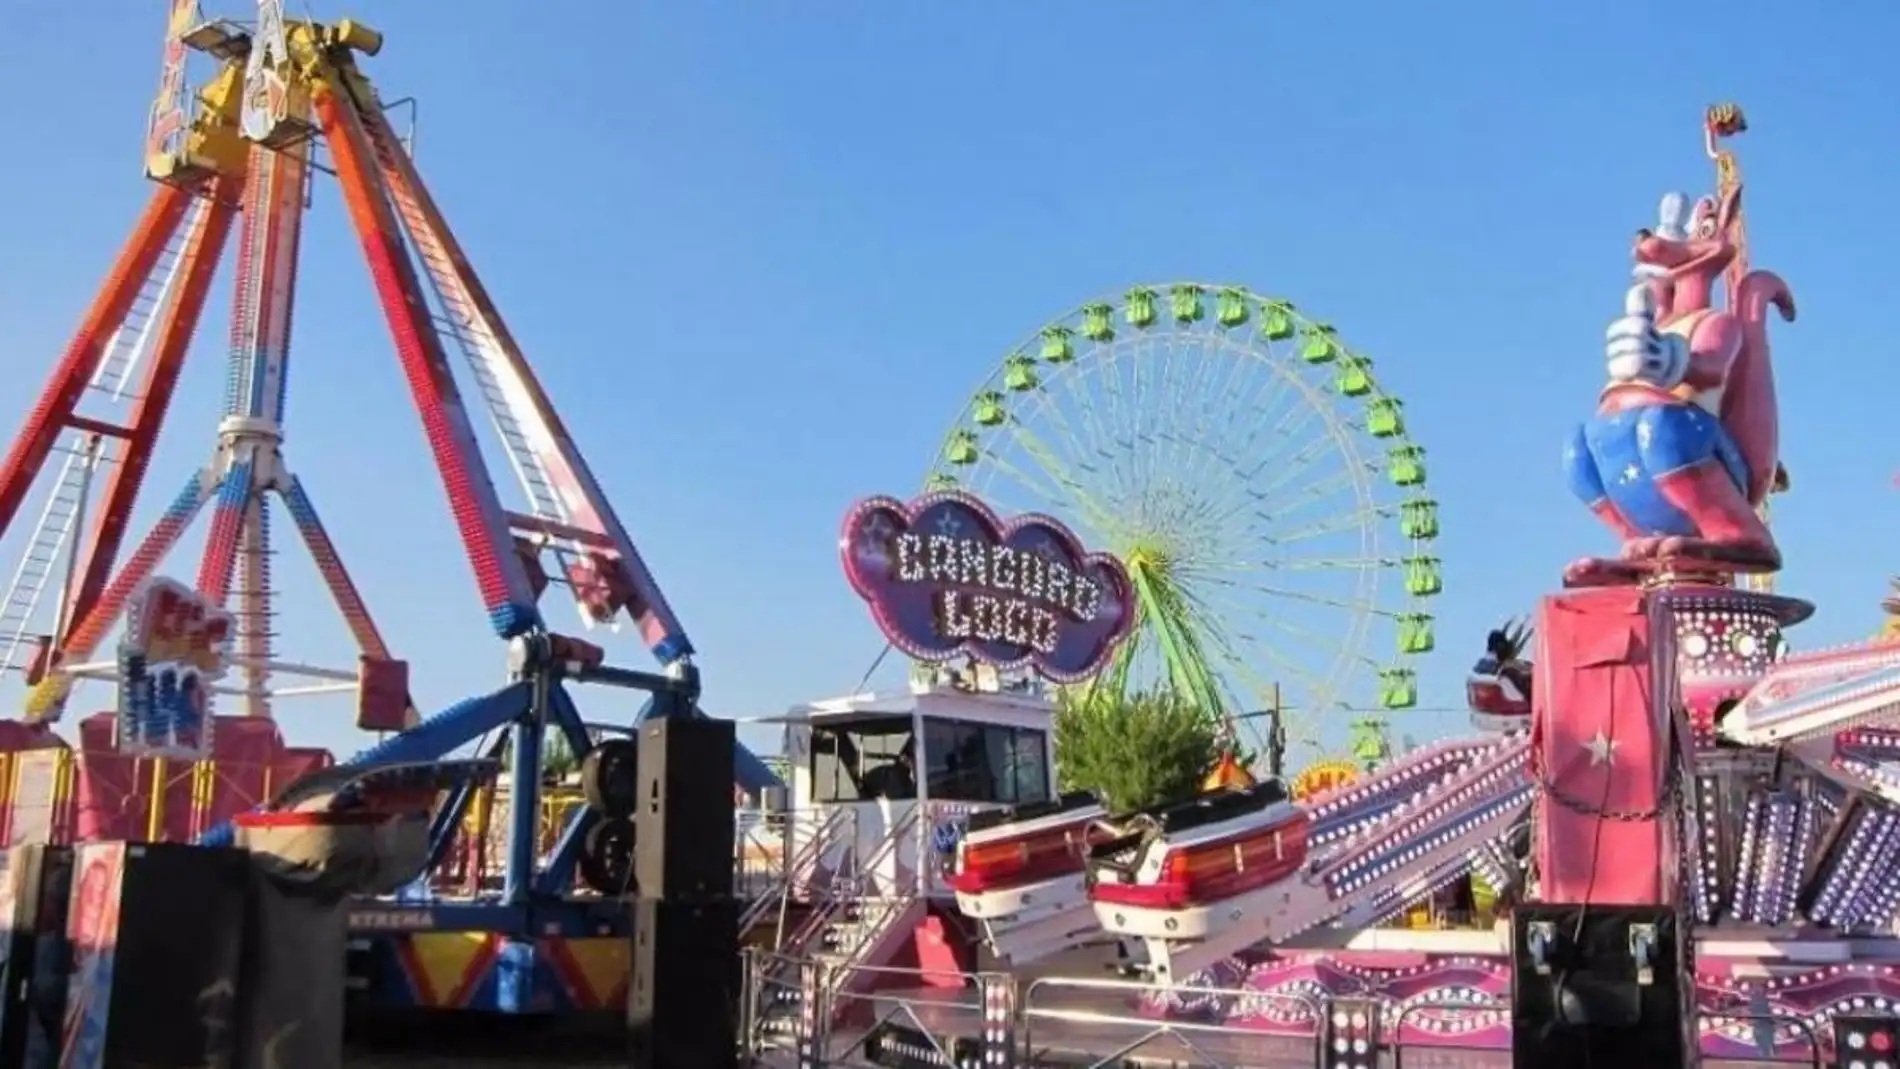 El alcalde de Cáceres confirma que las Ferias de San Fernando se centrarán en actuaciones infantiles y sin conciertos